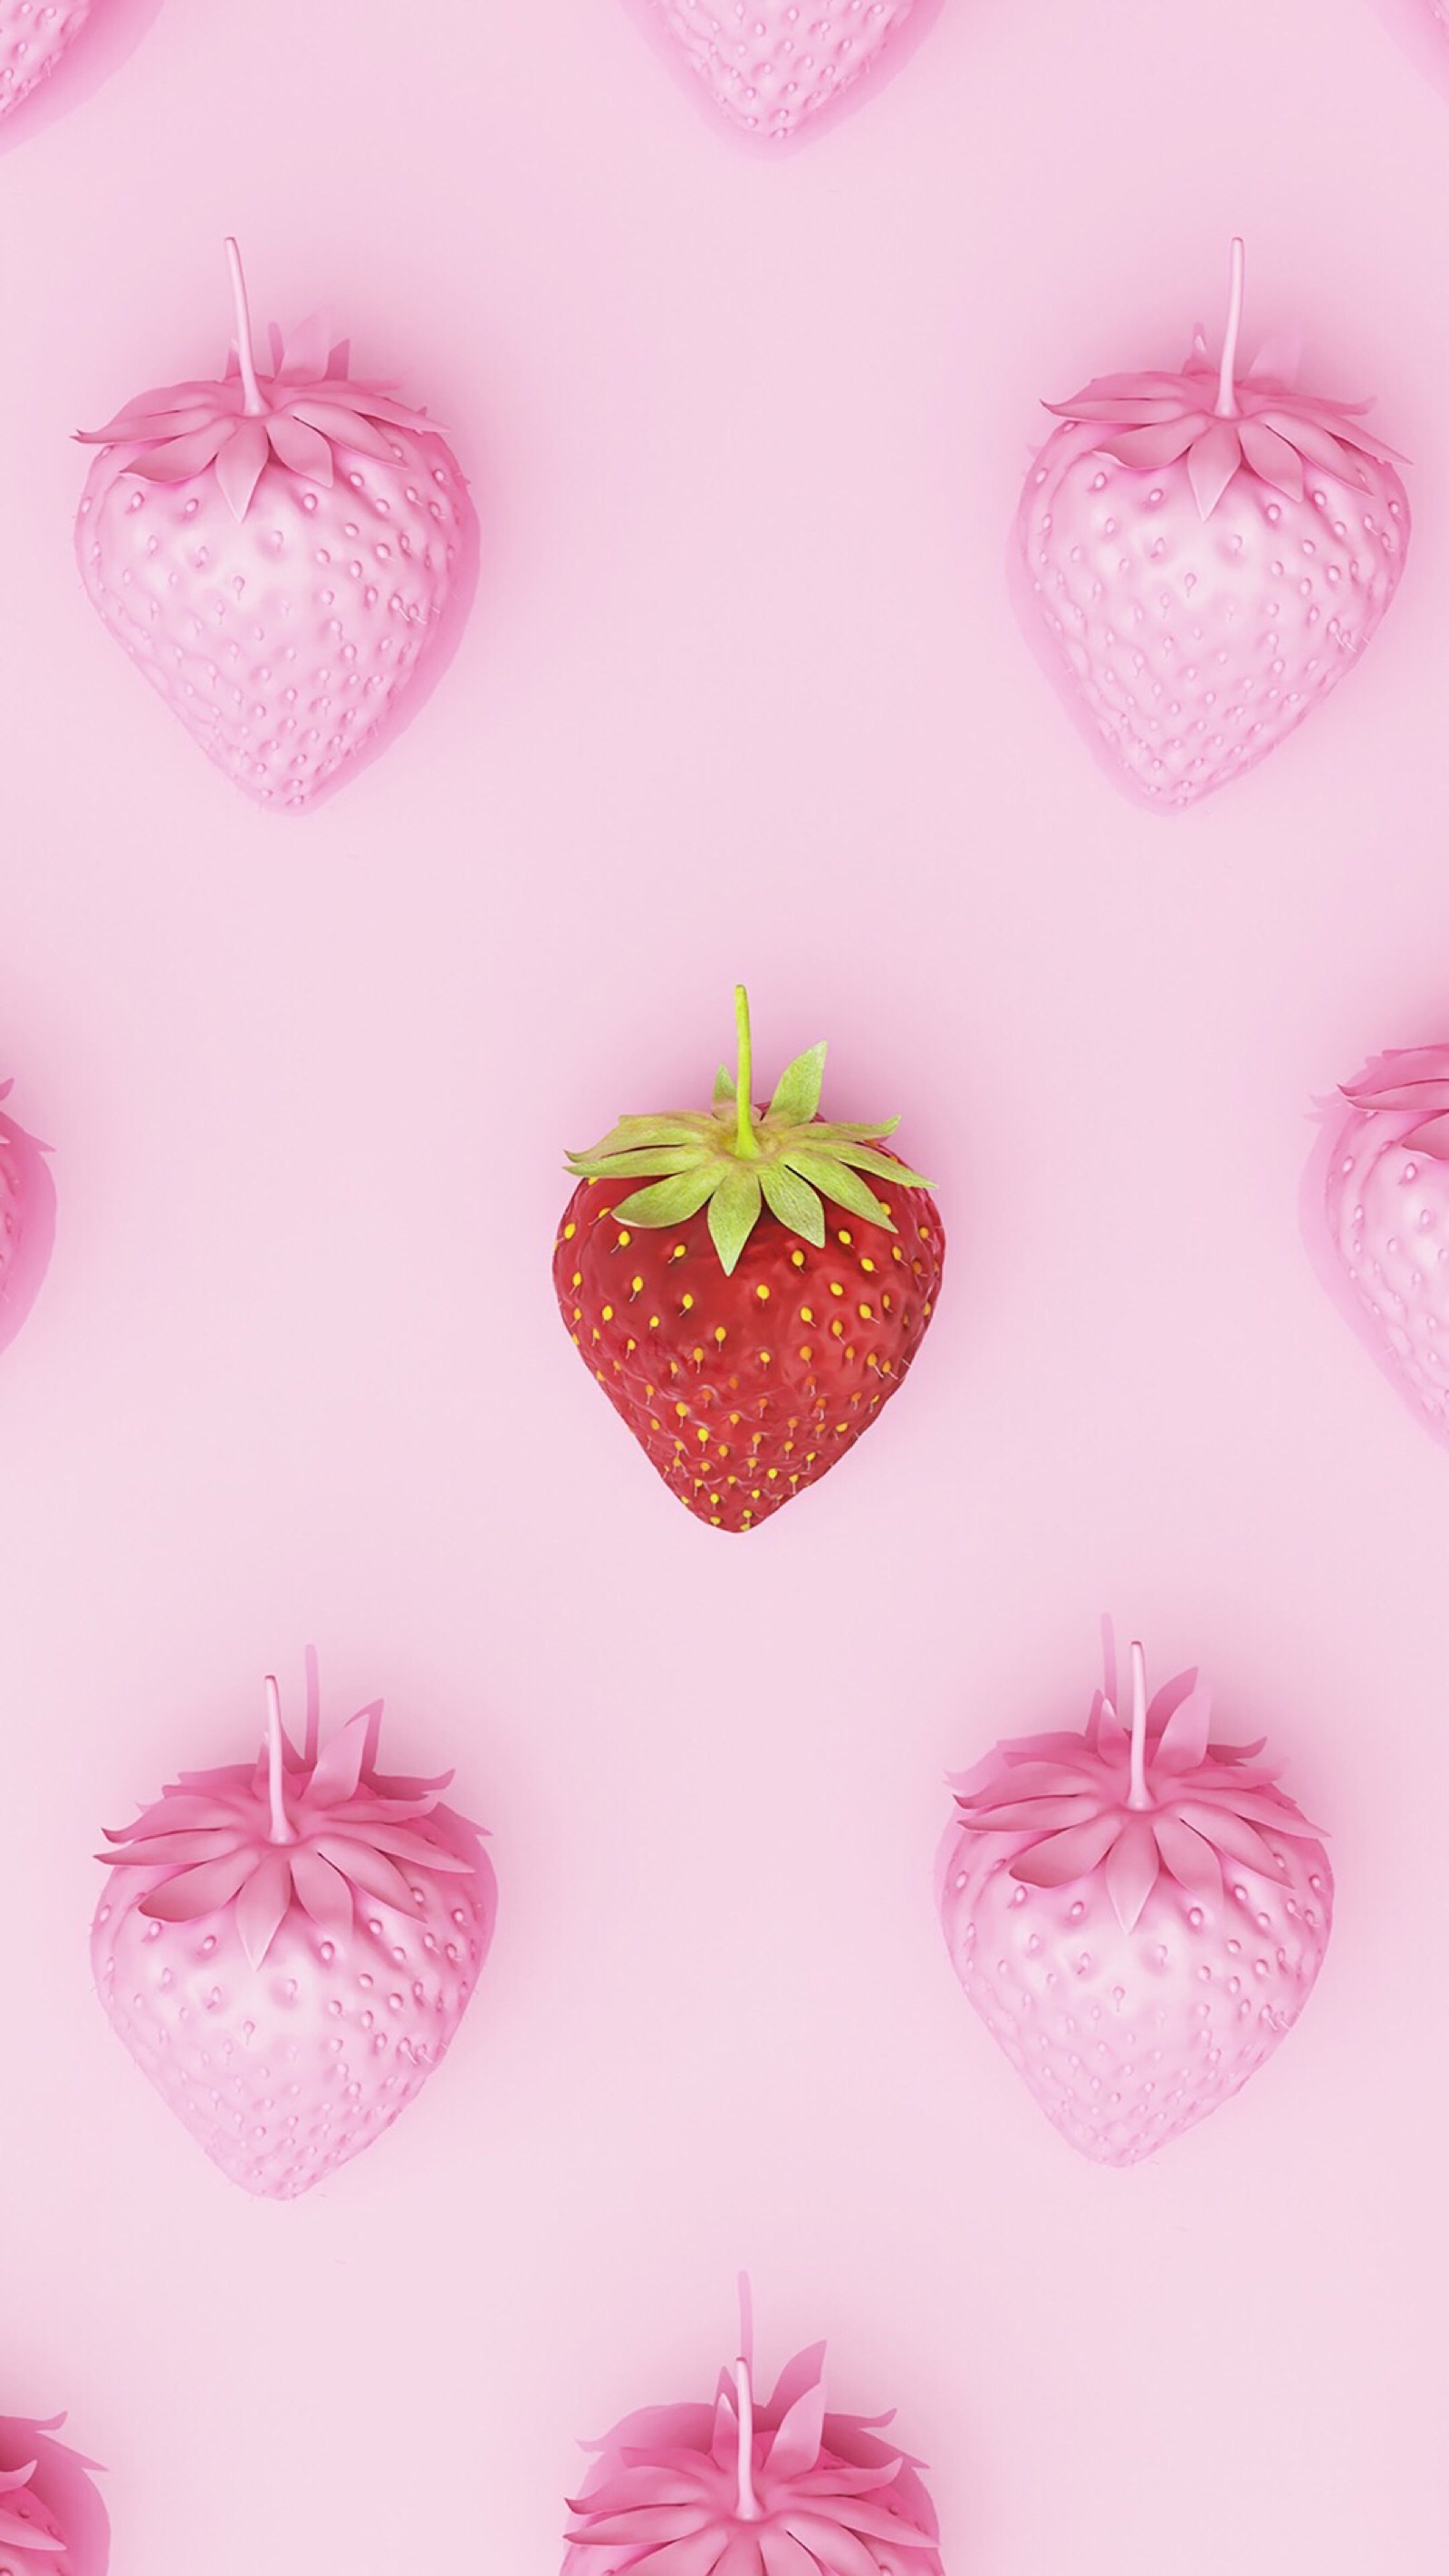 草莓少女心